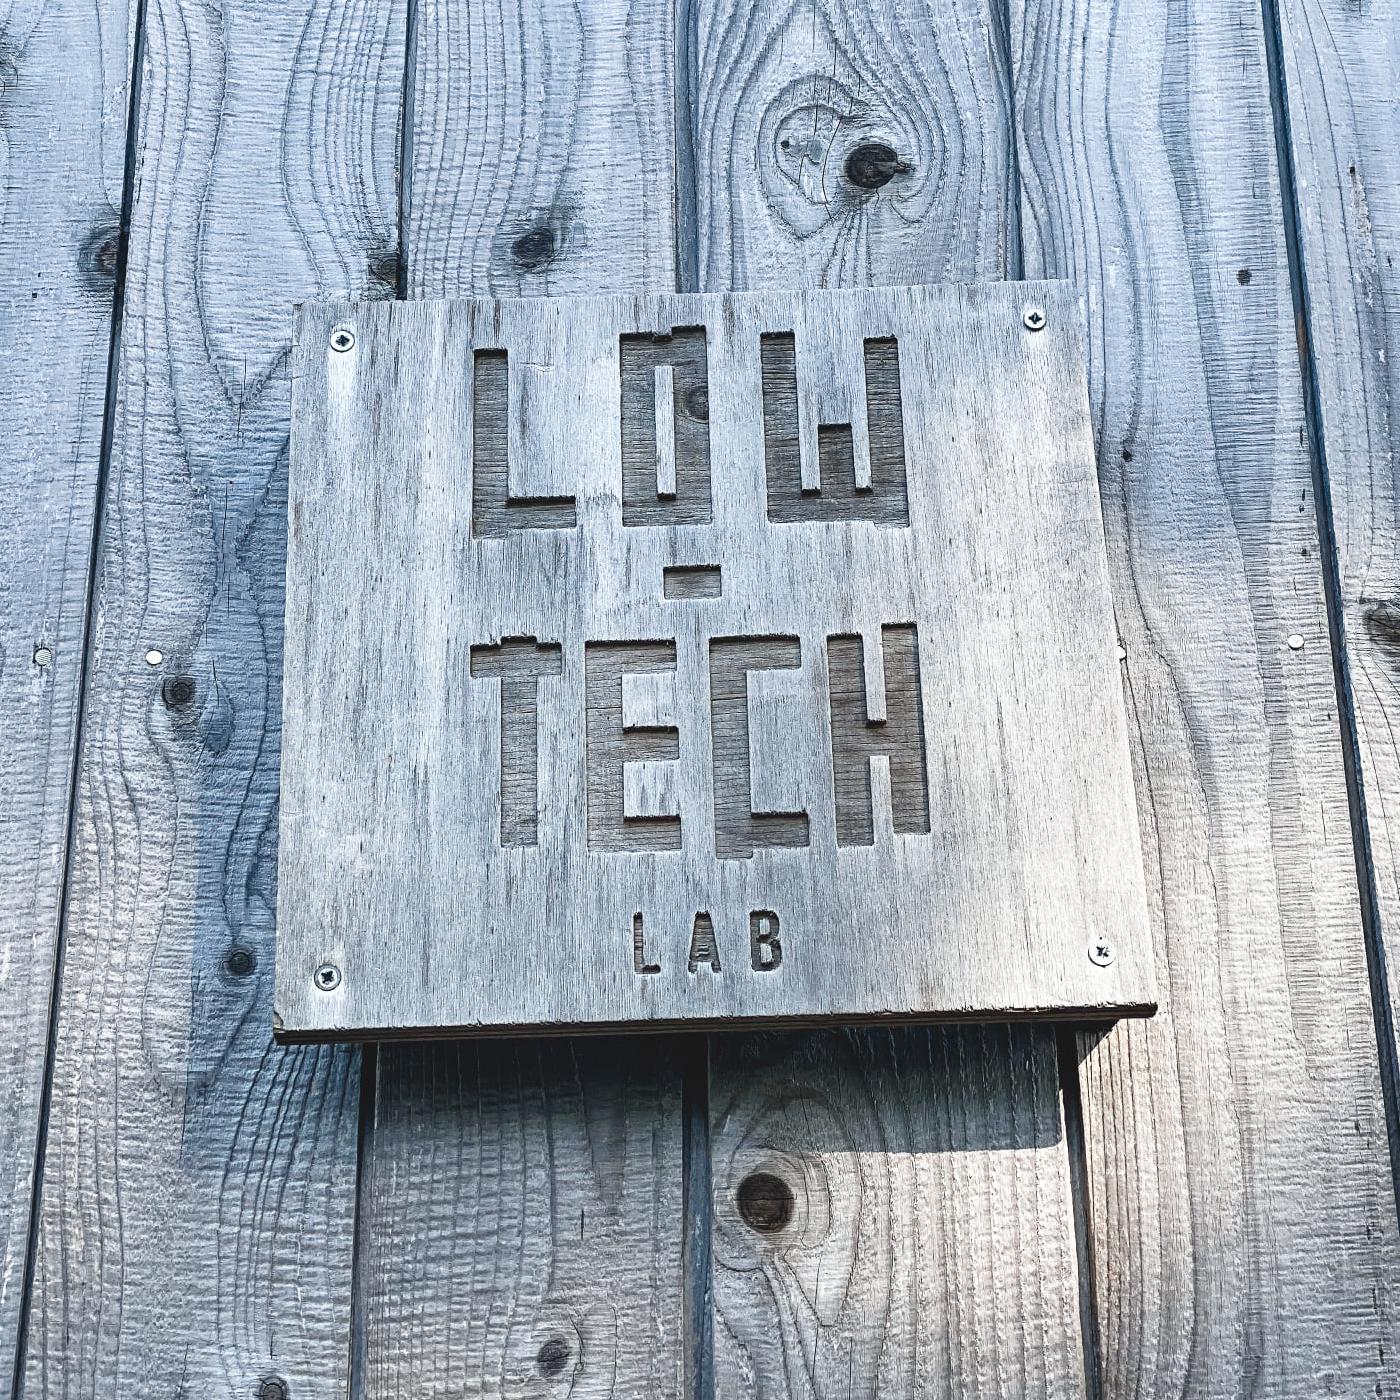 Low tech lab